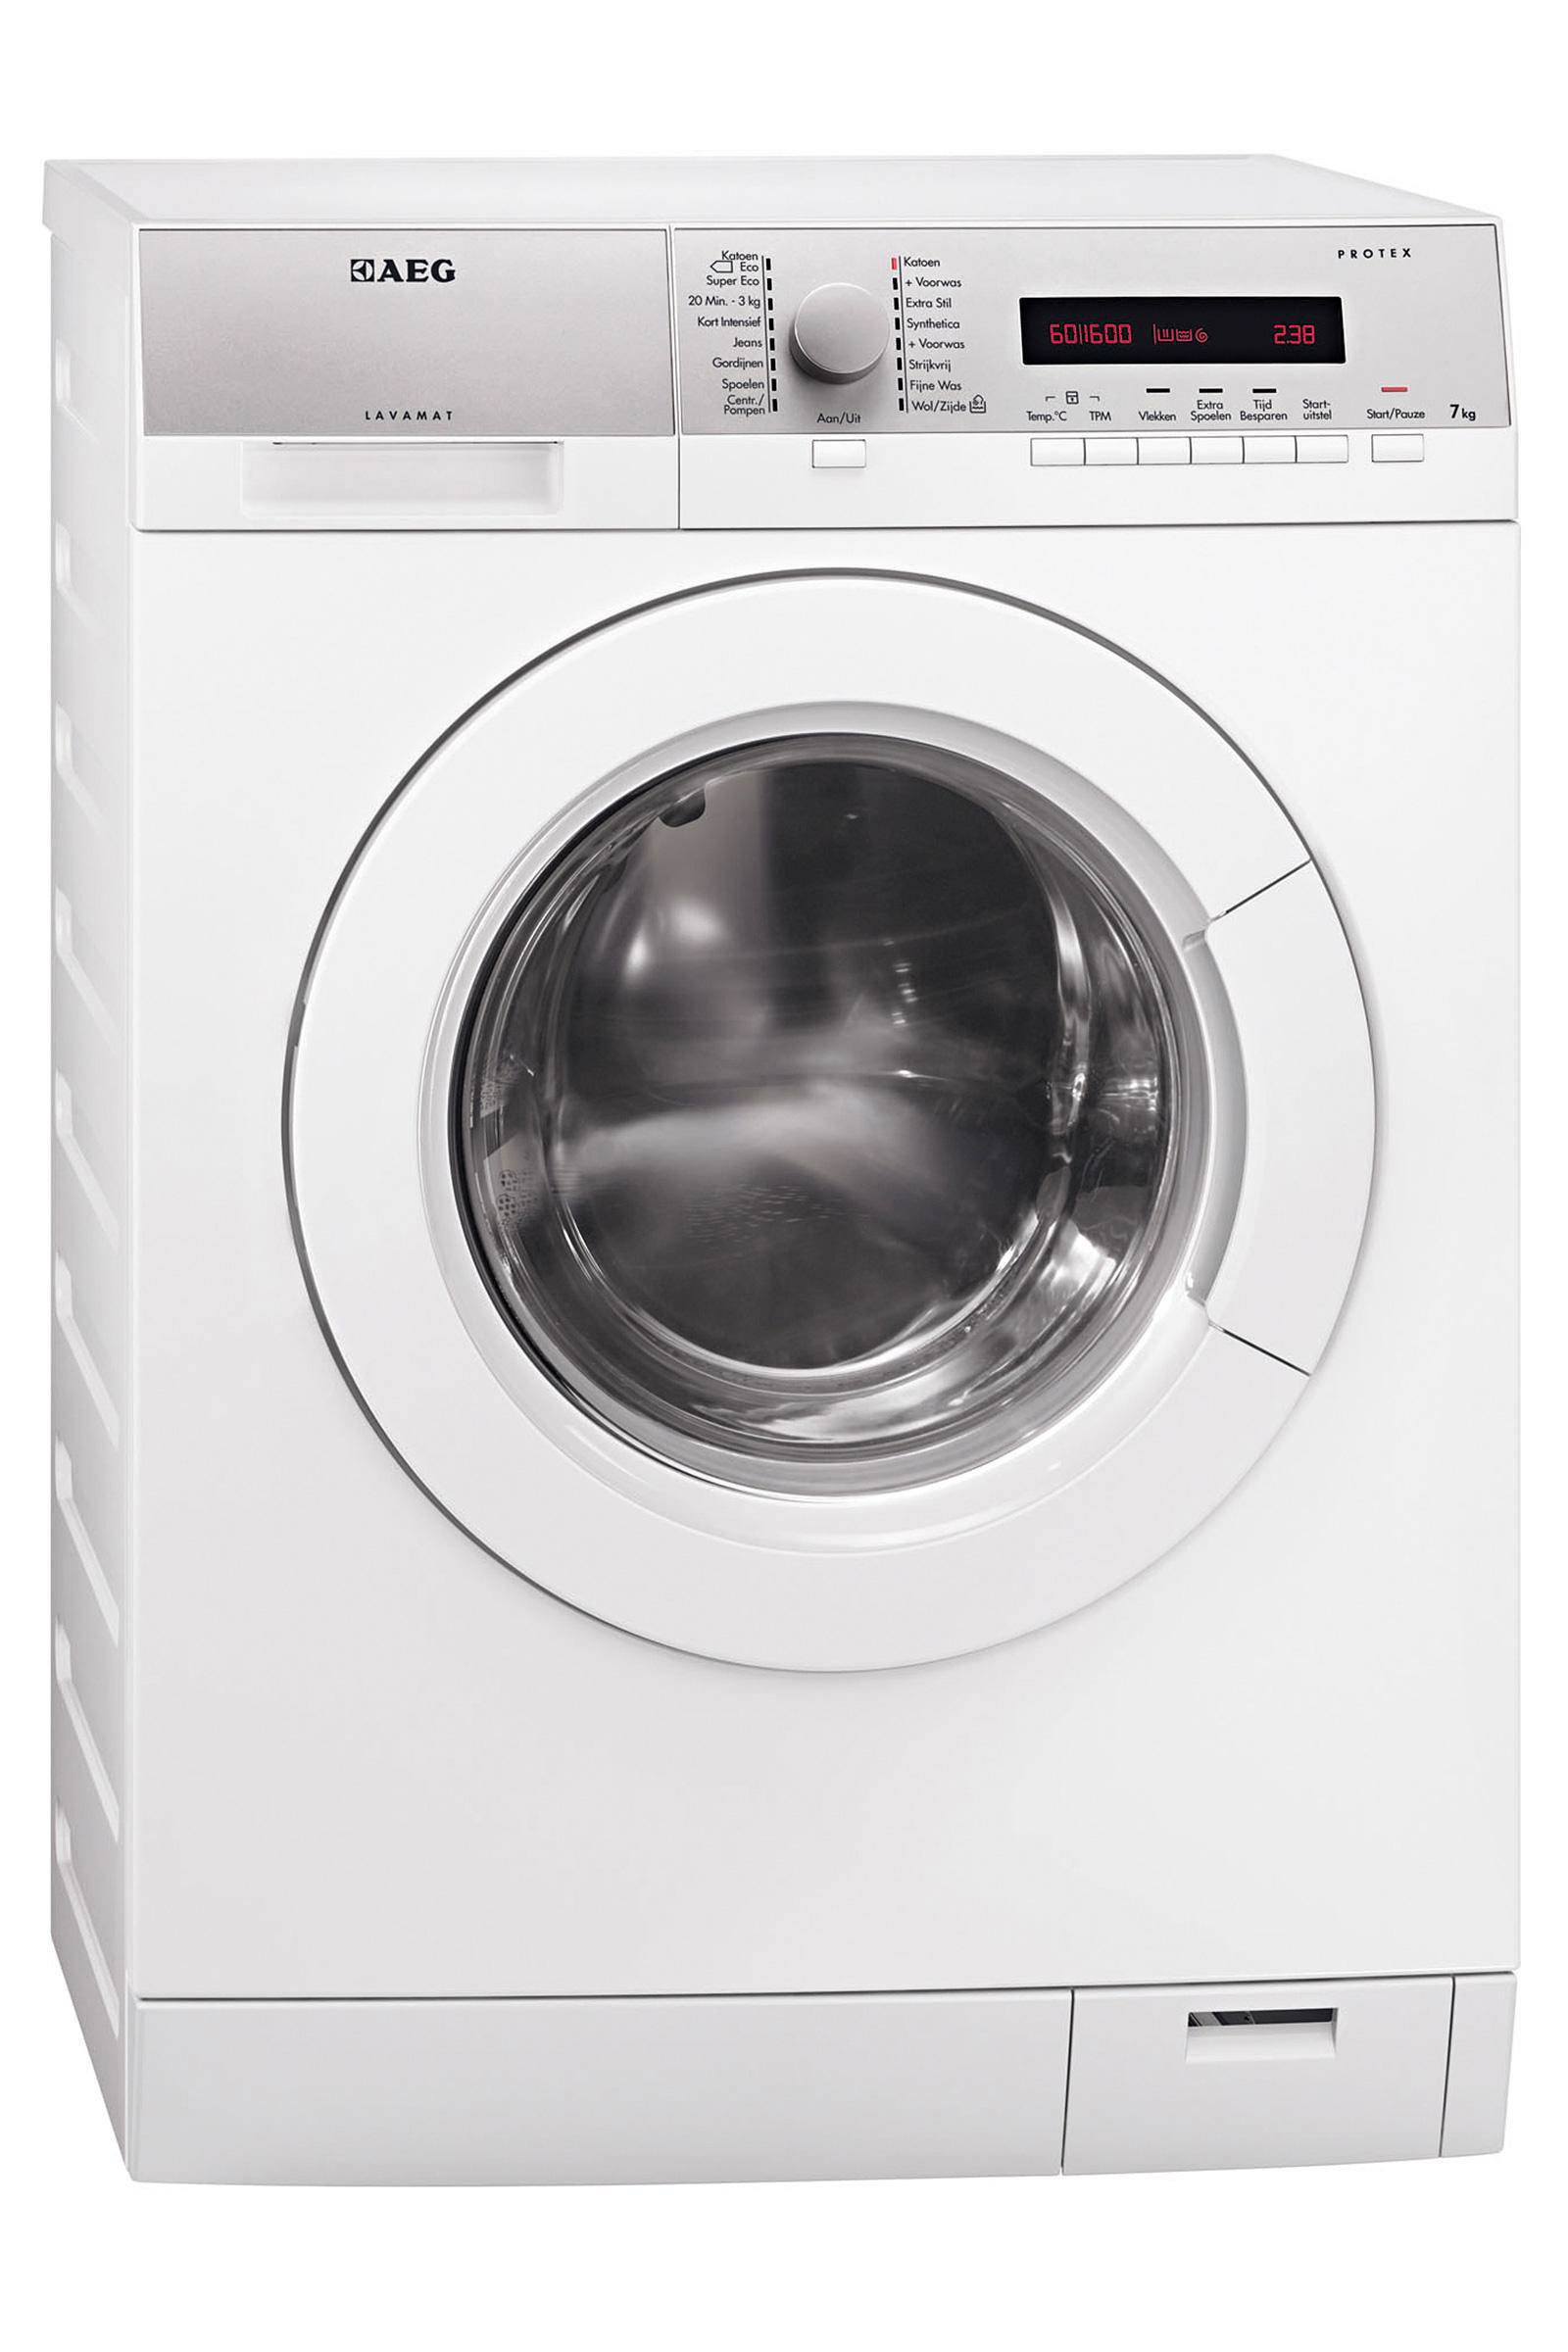 Zich verzetten tegen dichters Portaal AEG Lavamat 76672 FL wasmachine - Wasmachinewebshop.nl